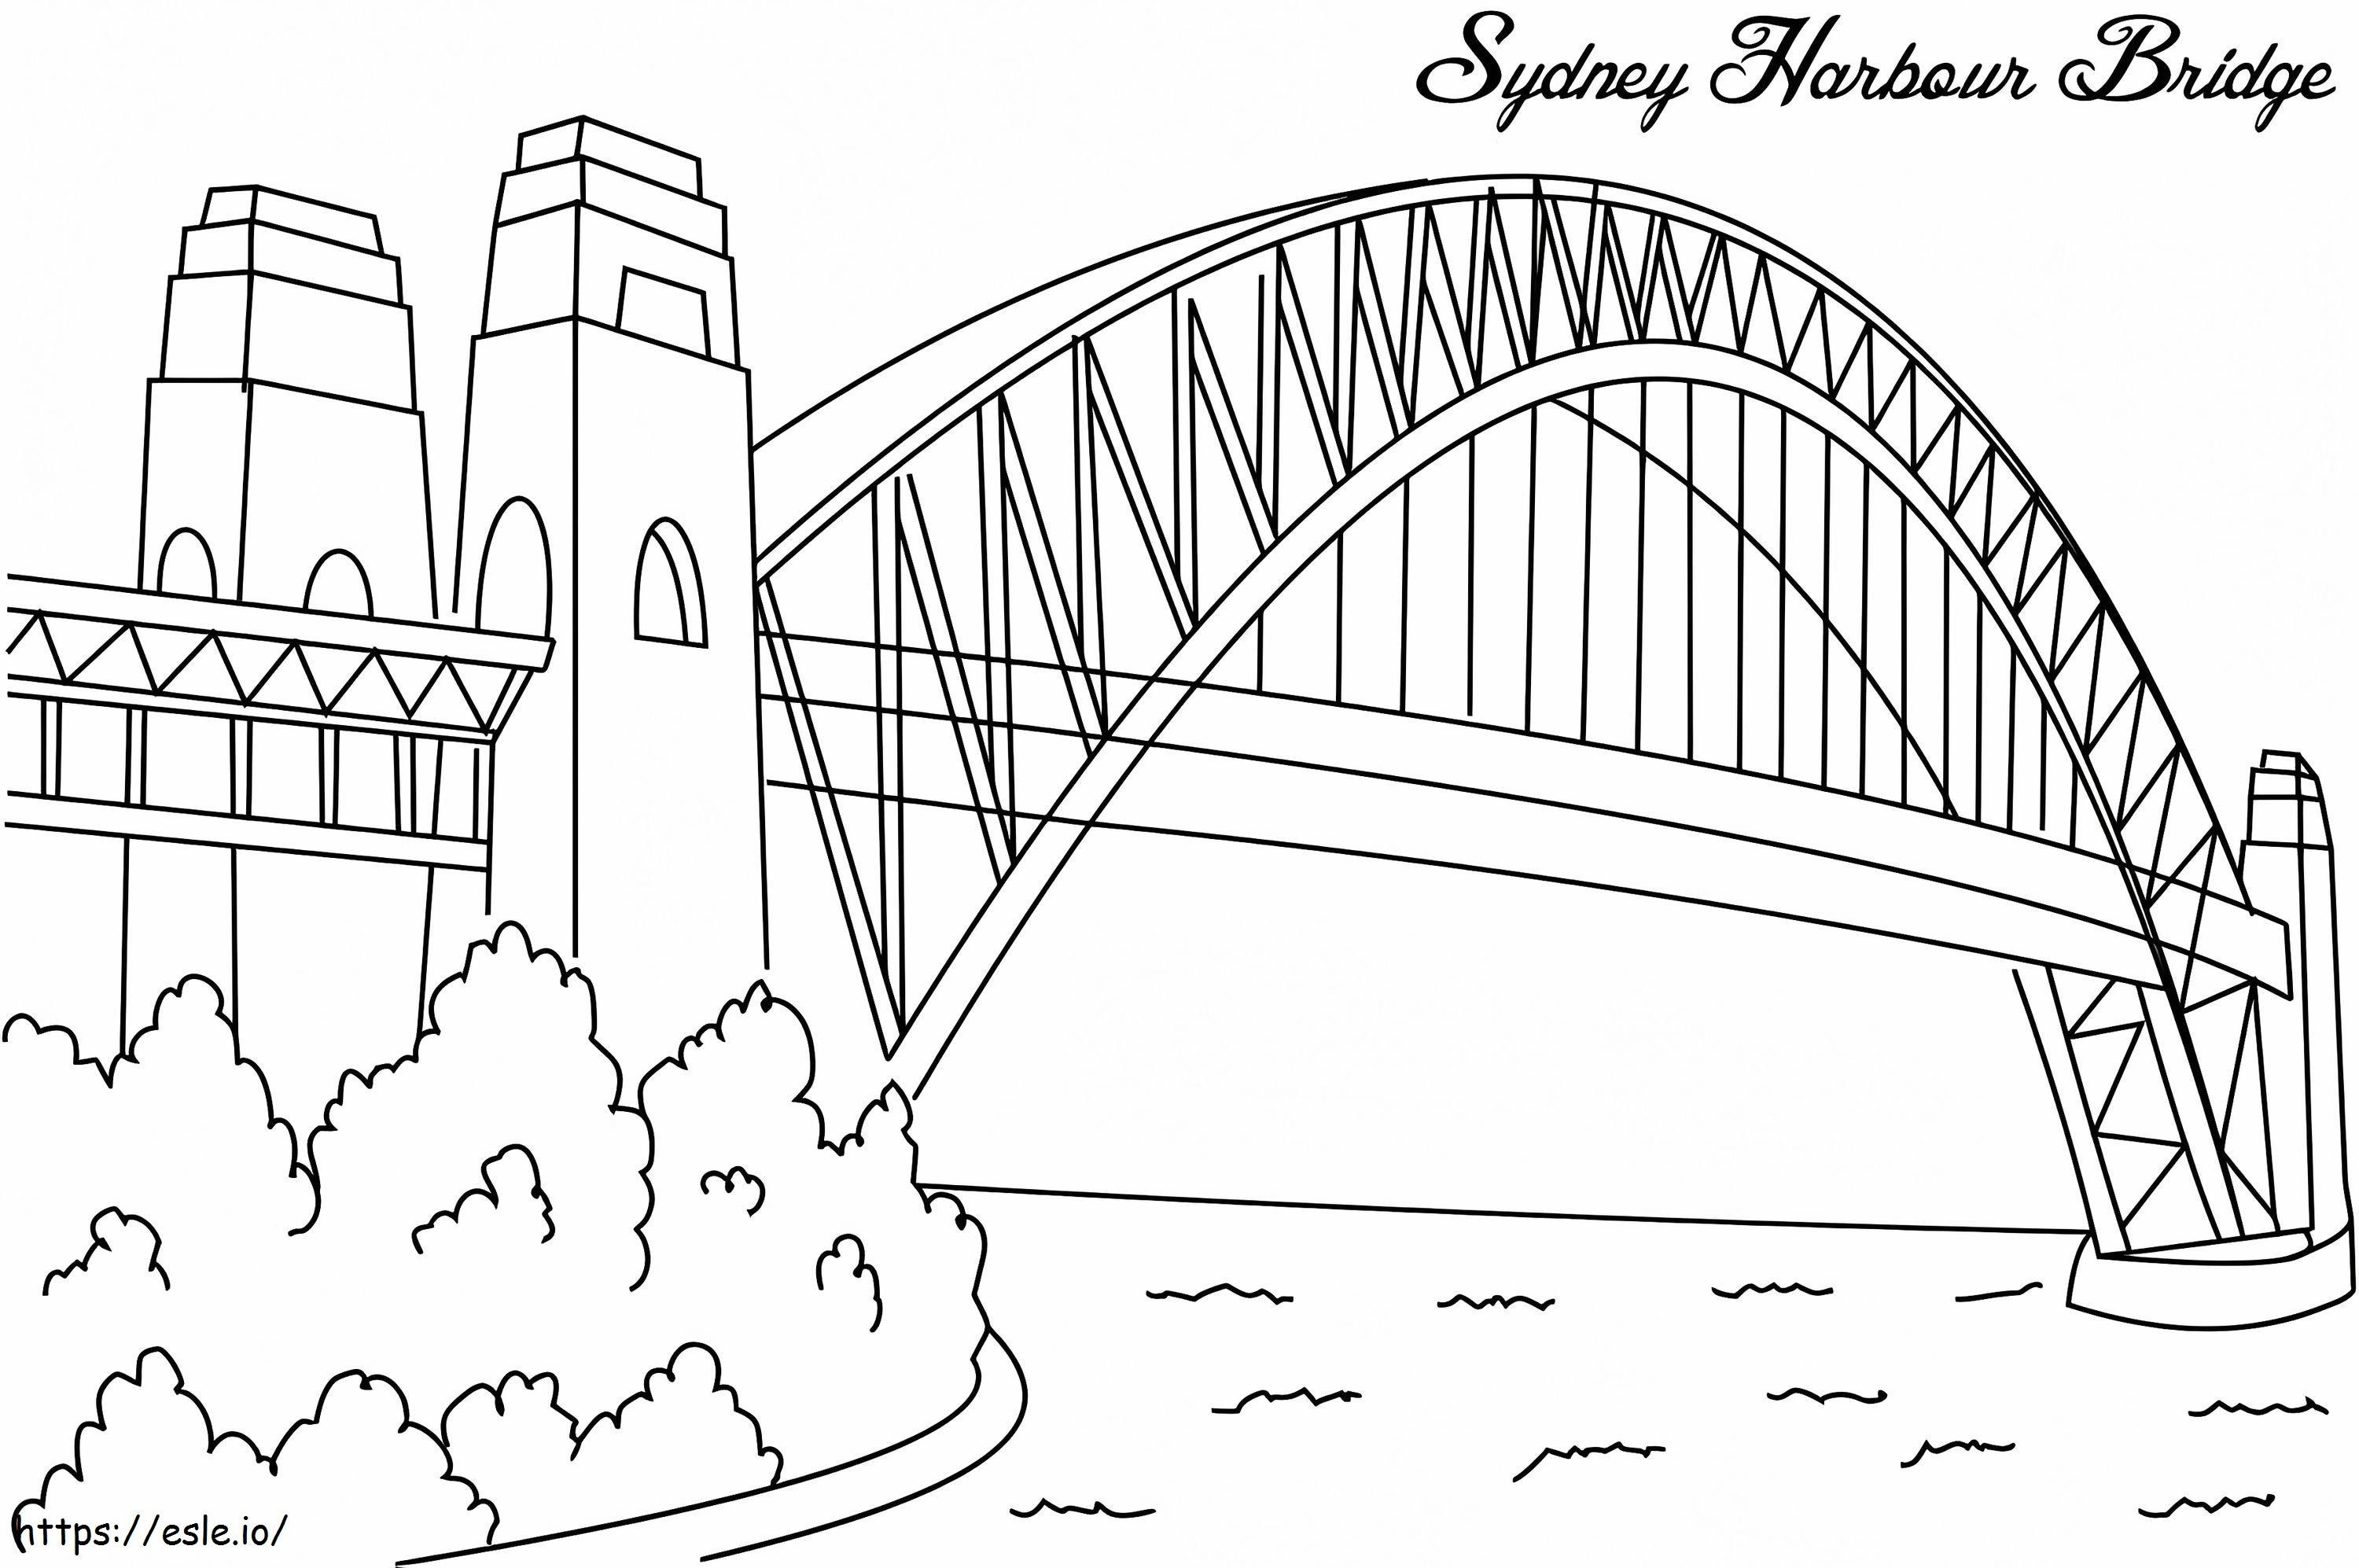  Sydney Harbour Bridge A4 kolorowanka